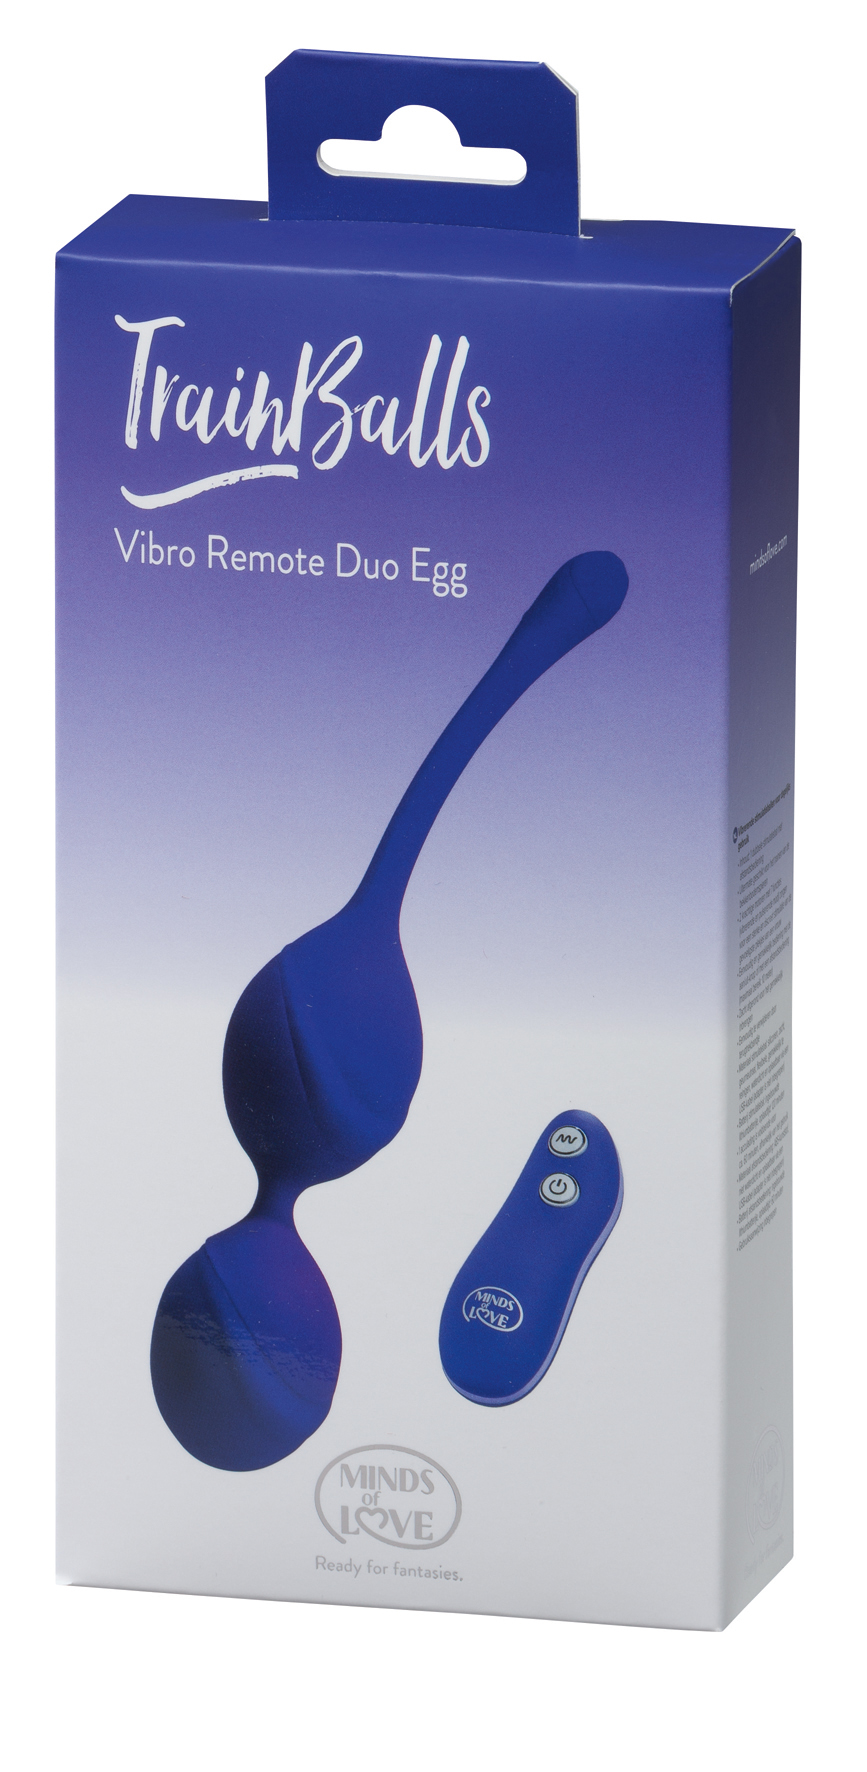 MINDS of LOVE TrainBalls Vibro Remote Duo Egg lila